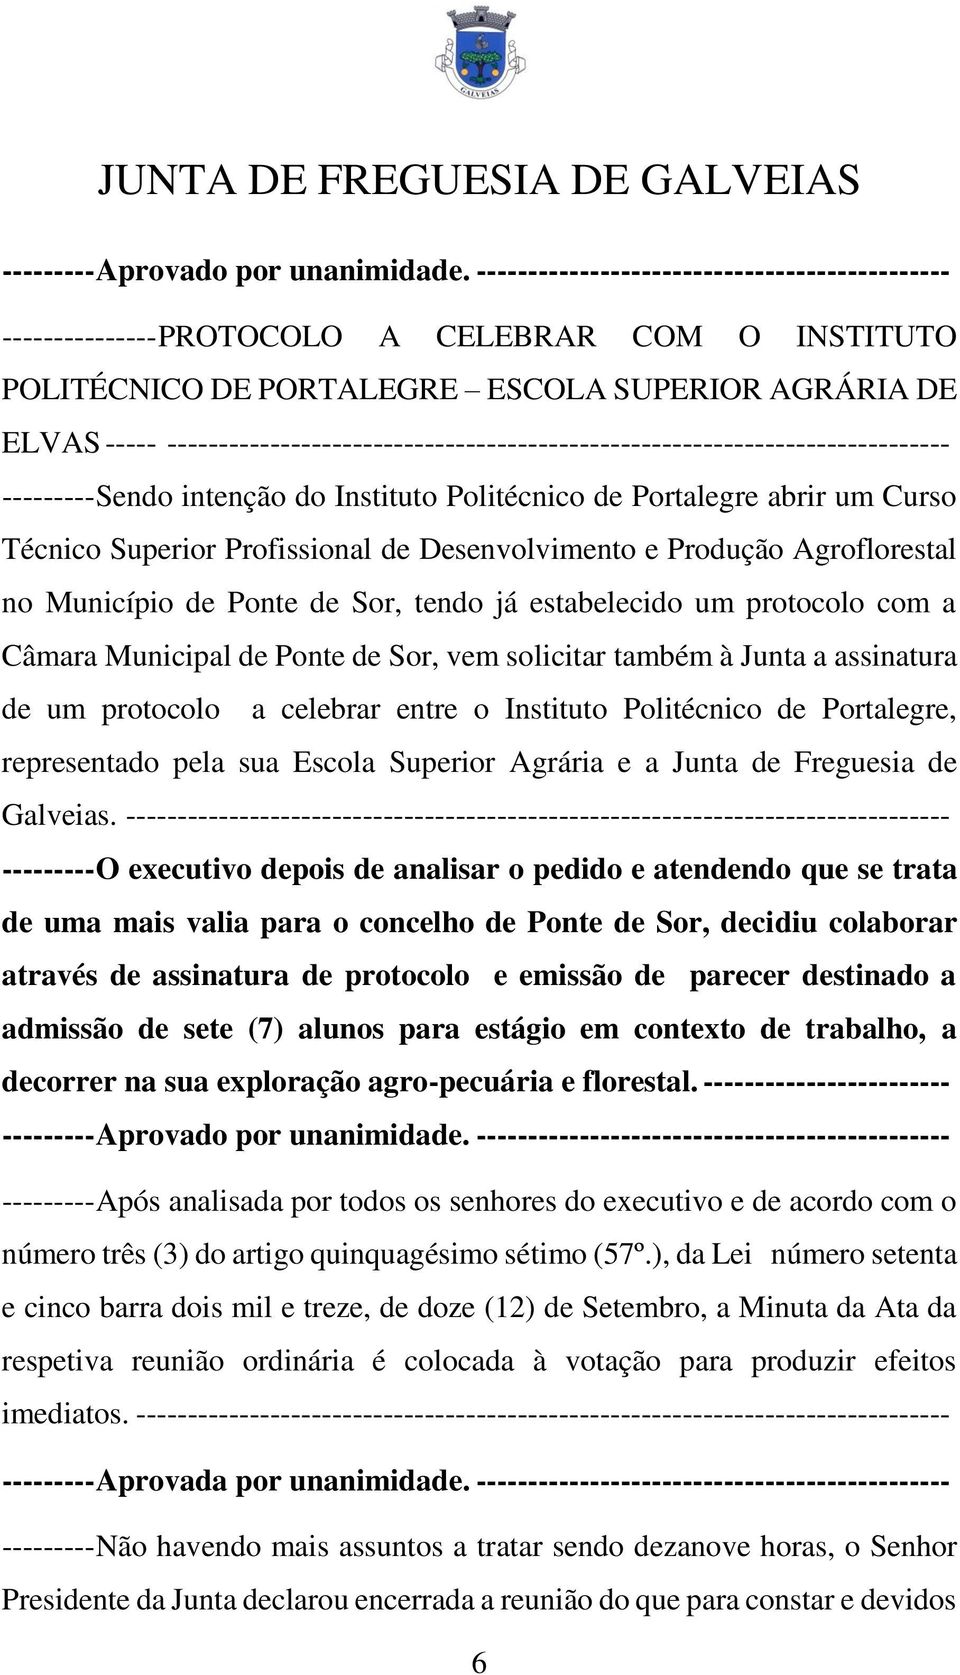 estabelecido um protocolo com a Câmara Municipal de Ponte de Sor, vem solicitar também à Junta a assinatura de um protocolo a celebrar entre o Instituto Politécnico de Portalegre, representado pela